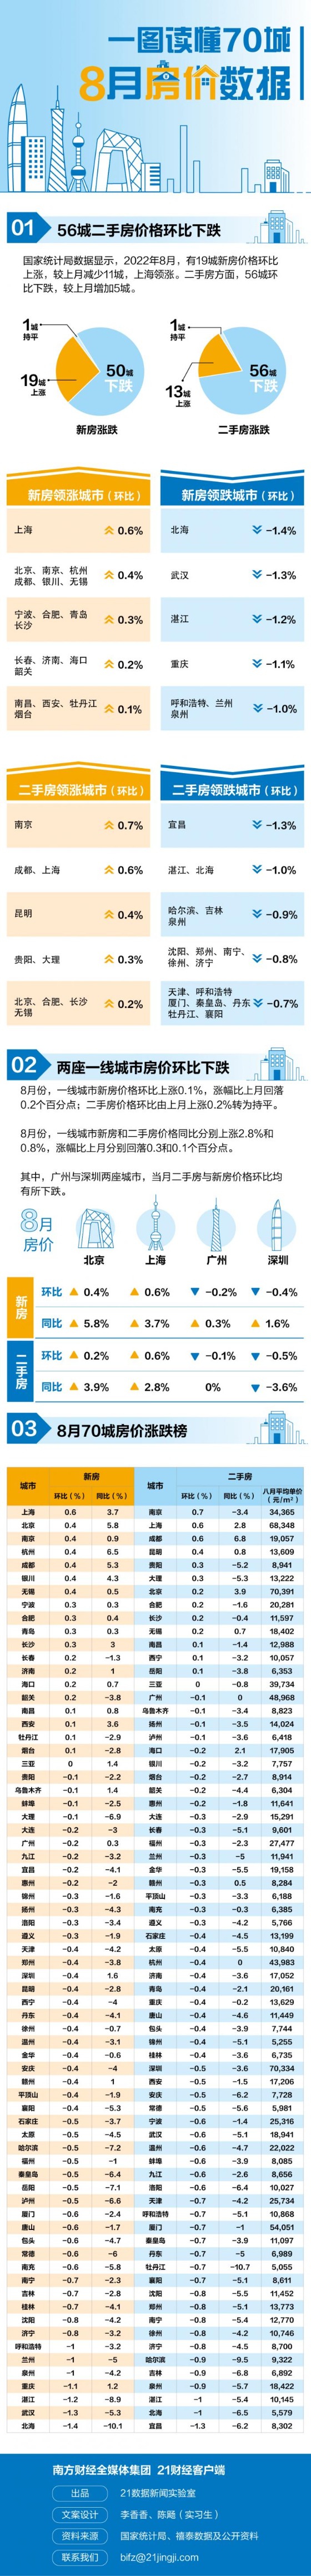 图解最新70城房价：上海新房价格领涨56城二手房价格下跌